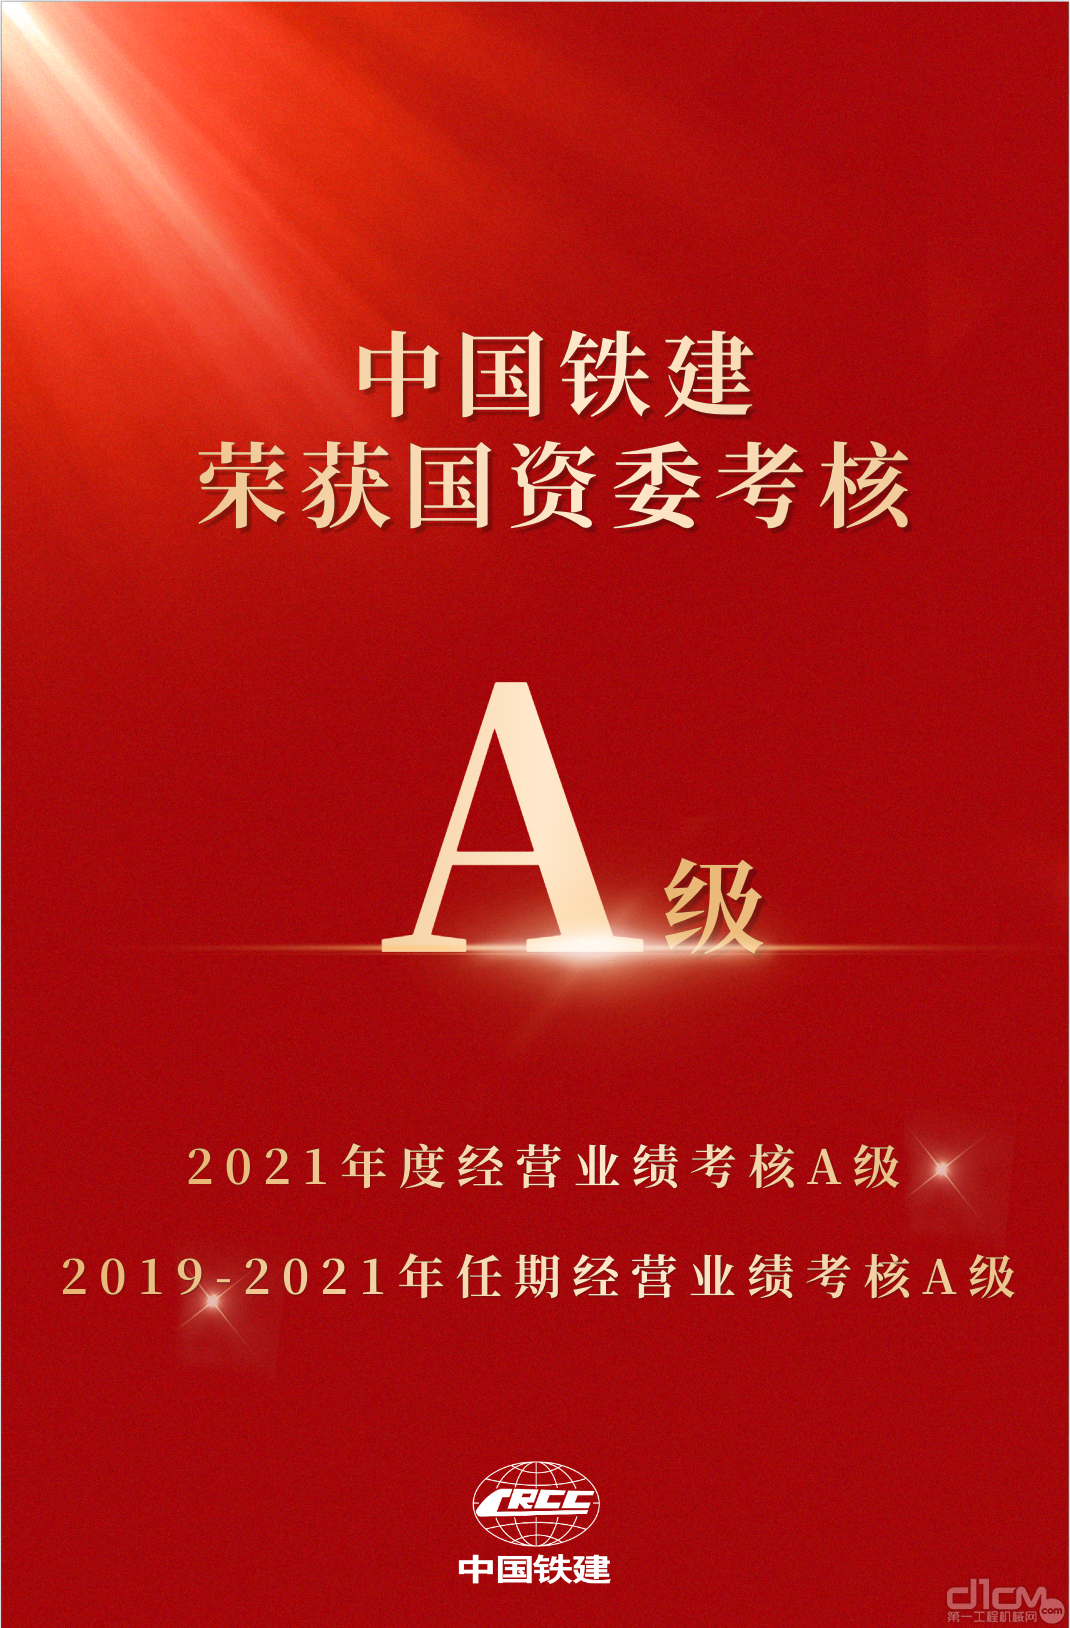 中国铁建荣获国资委年度和任期经营业绩考核“双A”